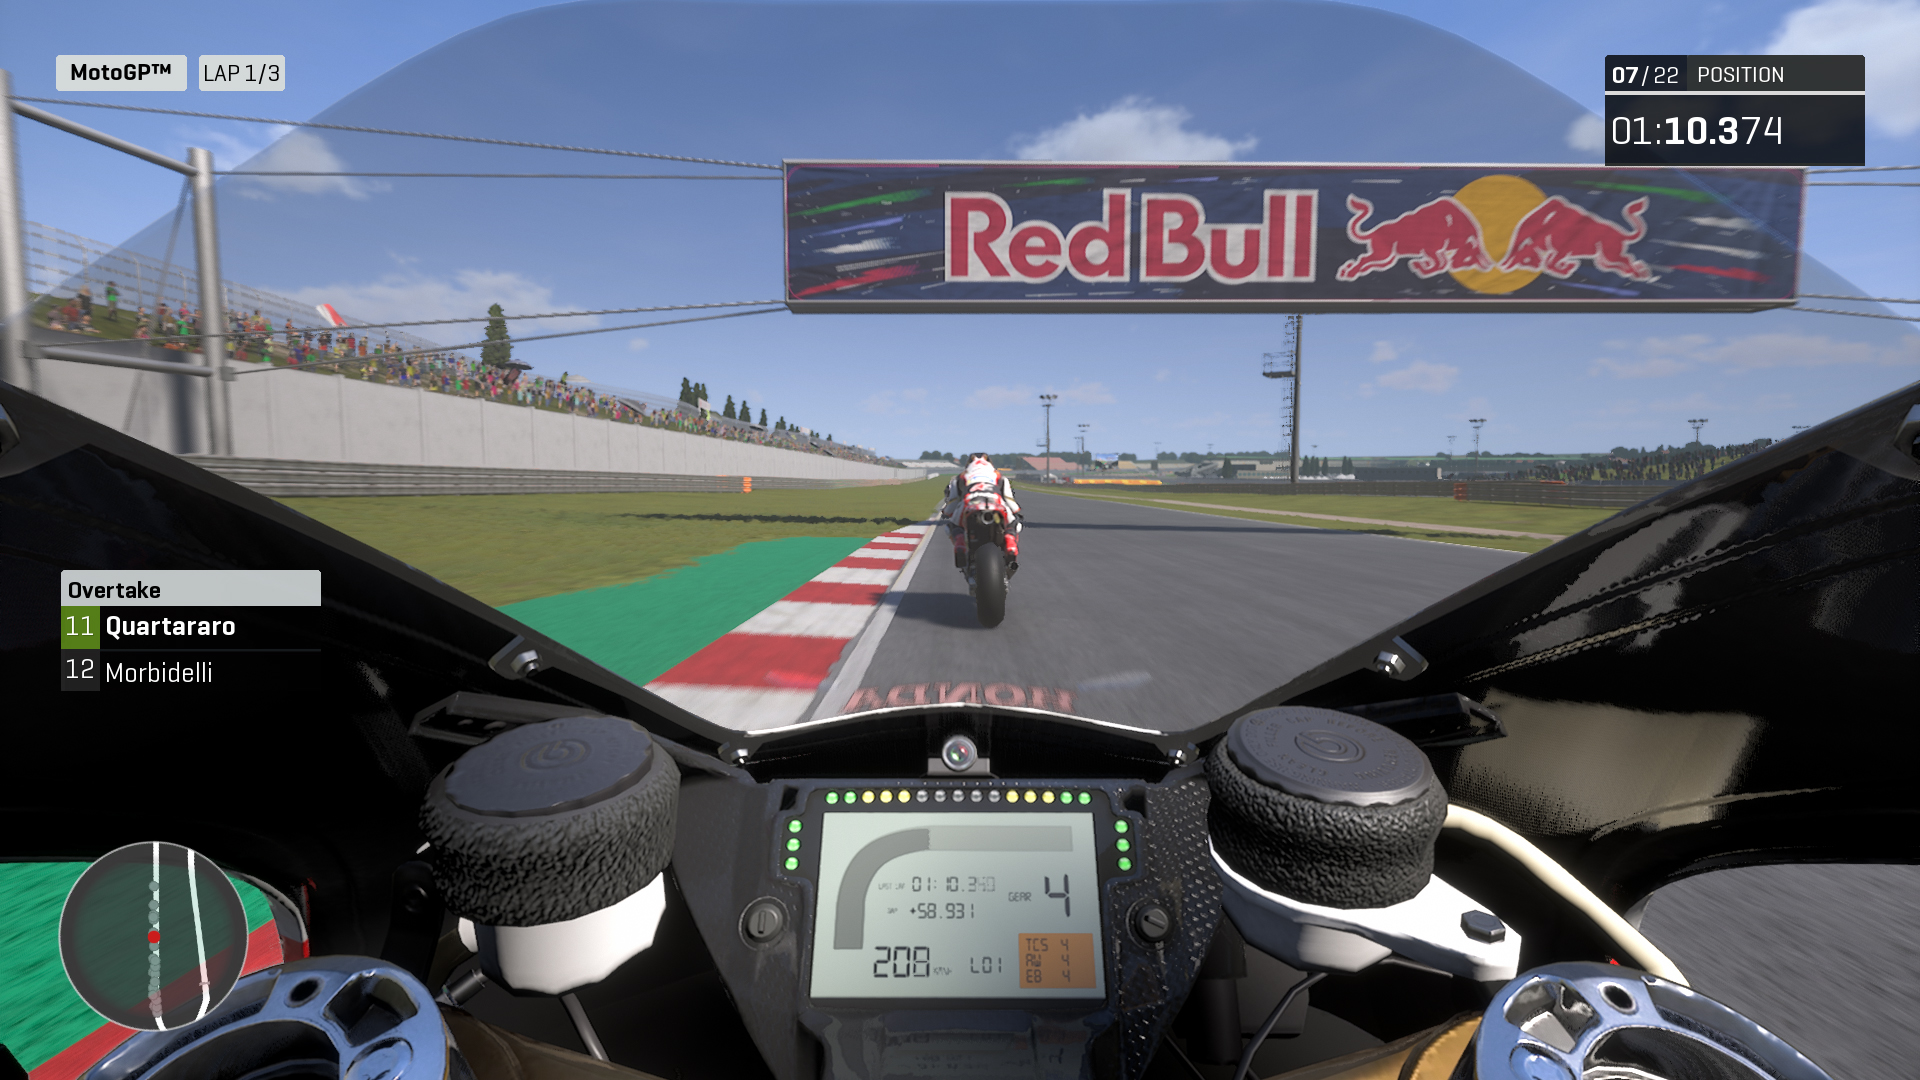 Link Tải Game MotoGP19 Miễn Phí Thành Công